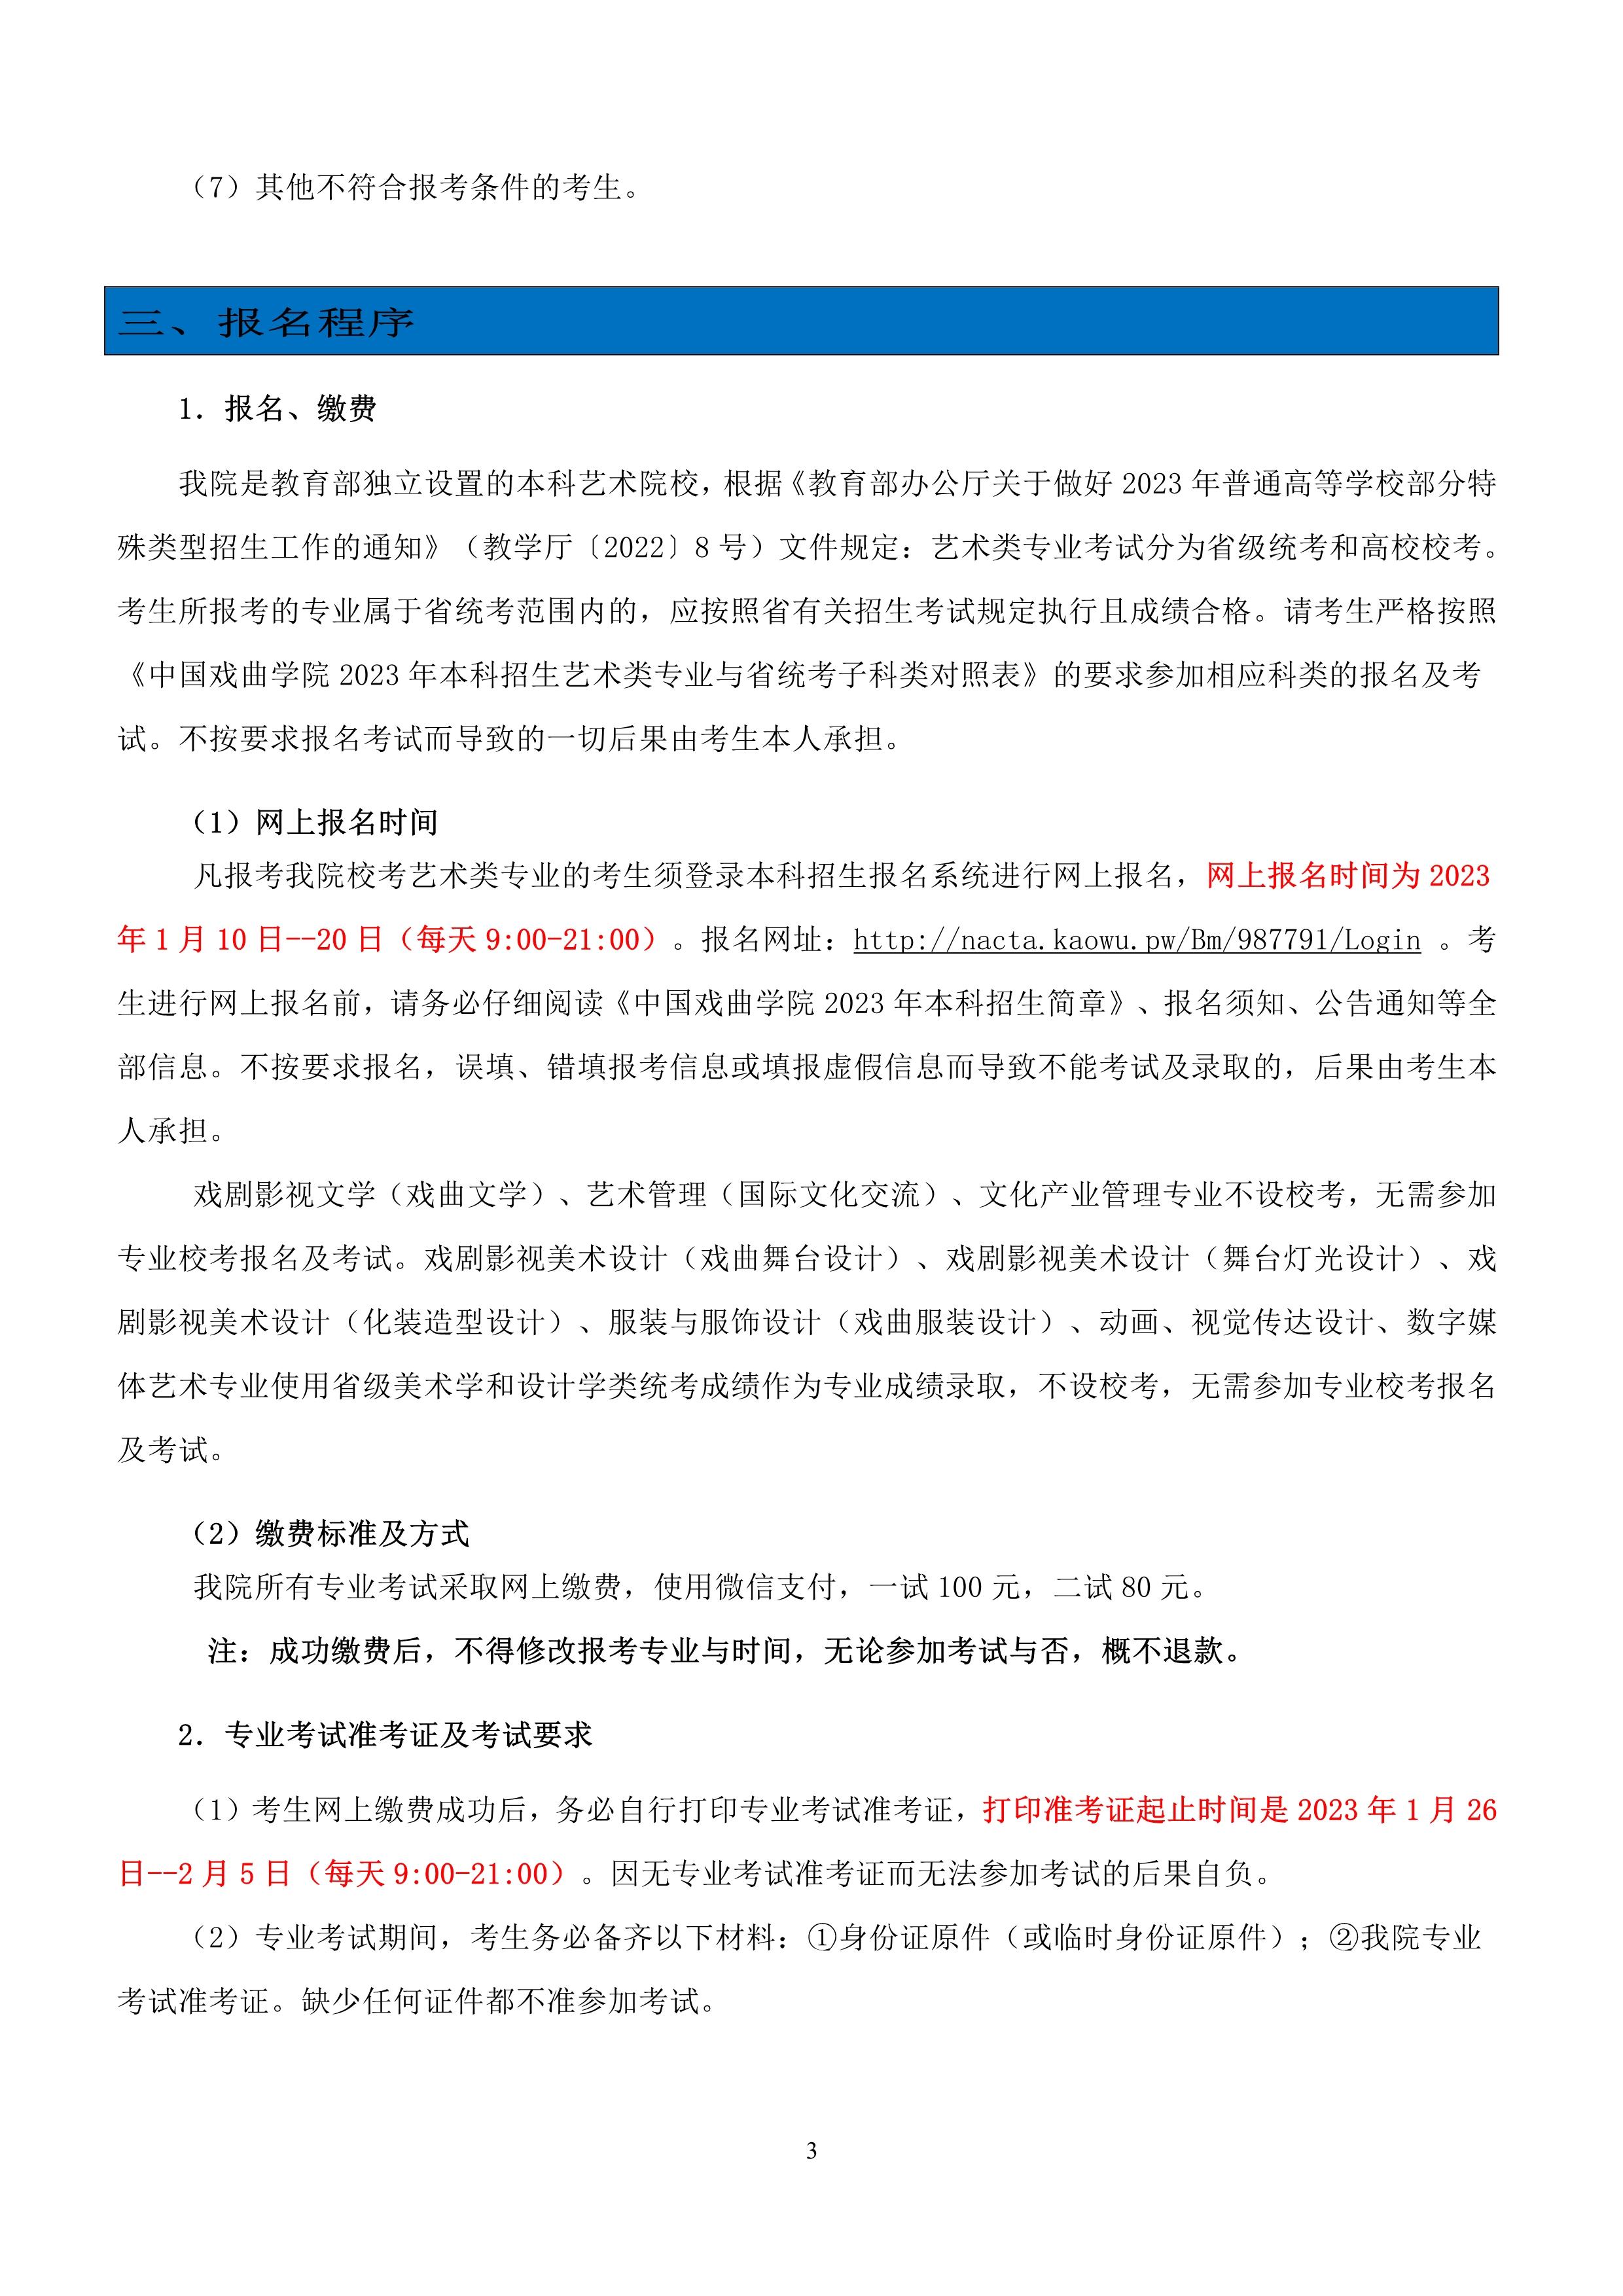 中国戏曲学院2023年本科招生简章_3.jpg